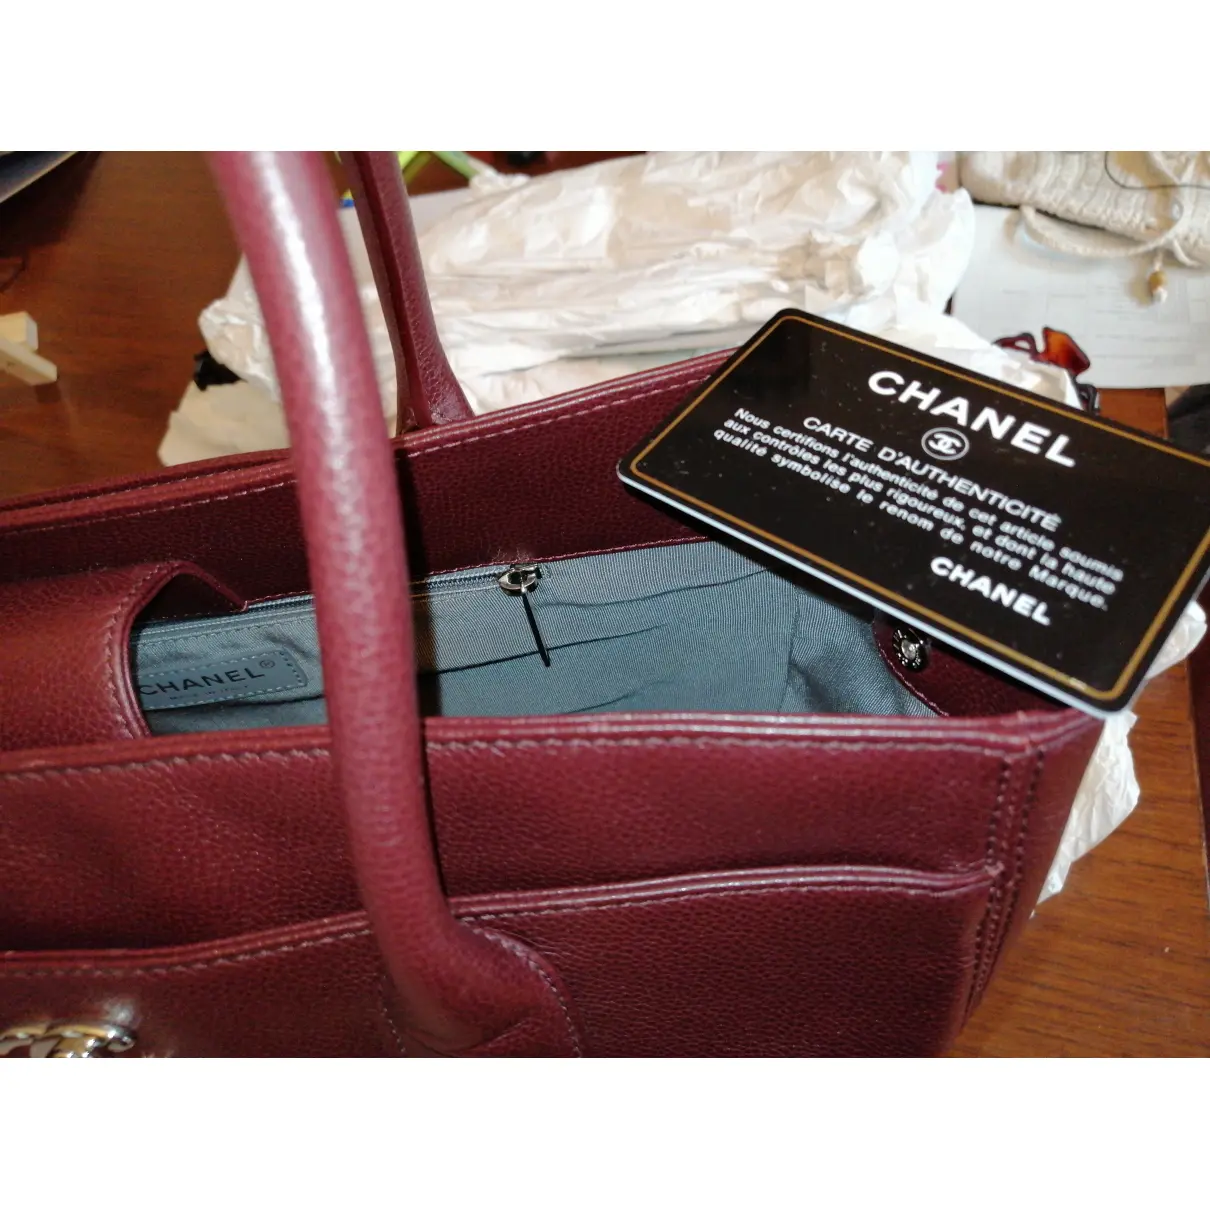 Executive leather handbag Chanel